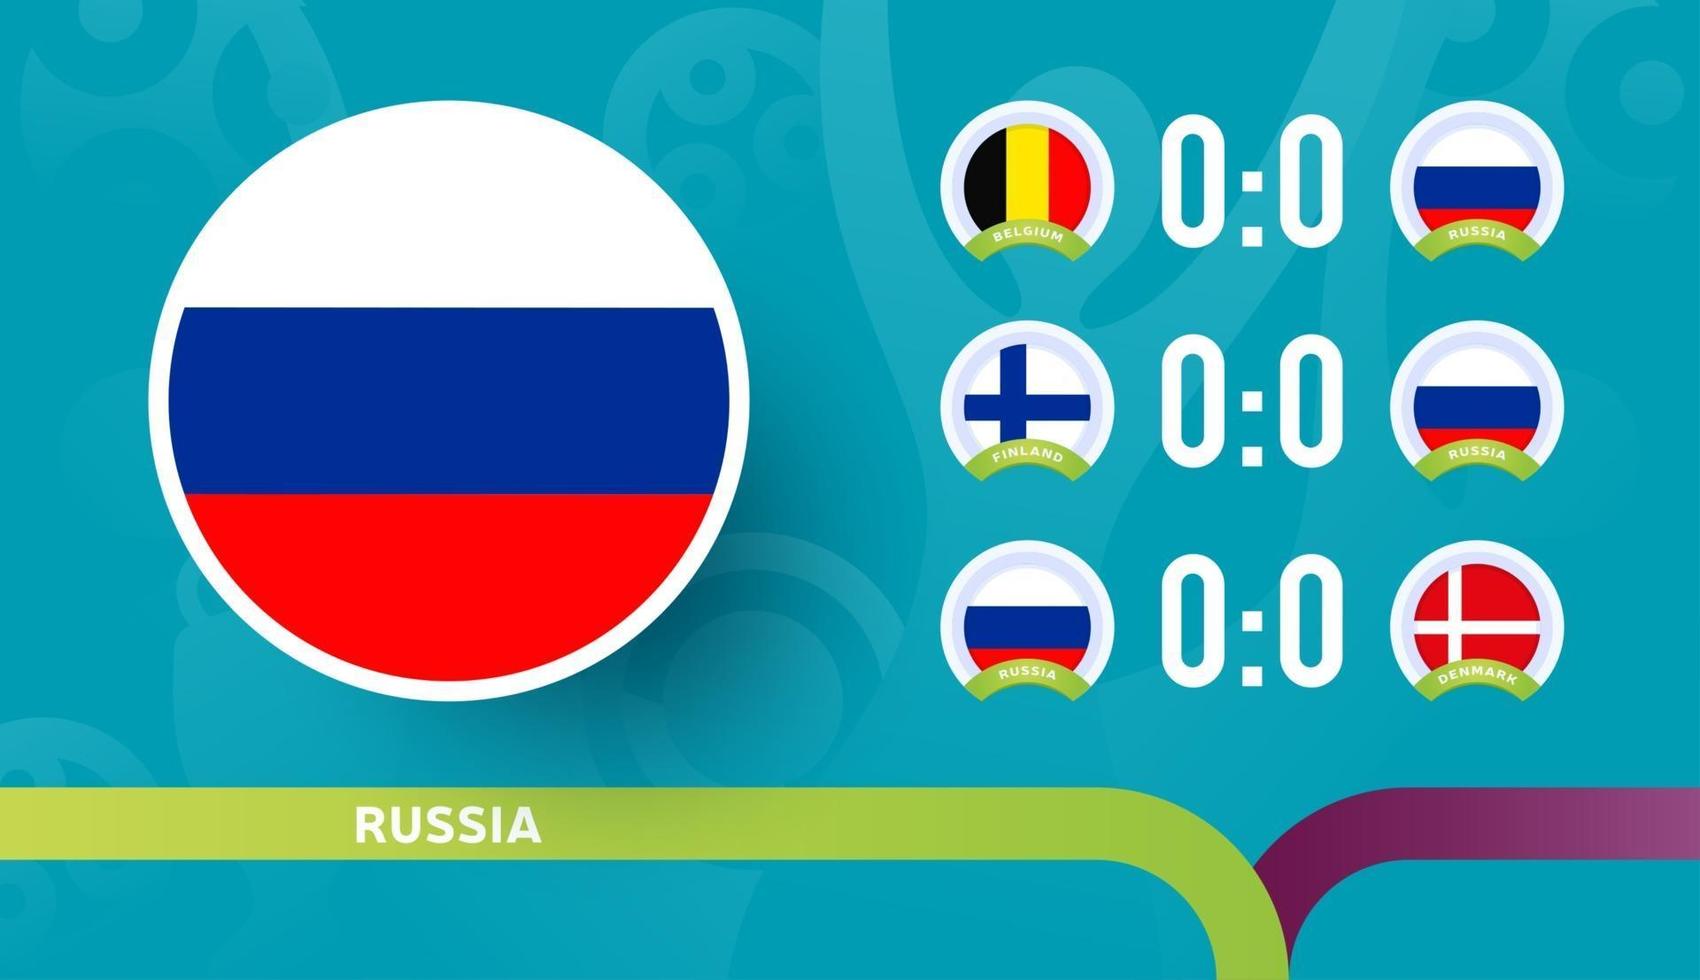 L'équipe nationale de Russie programme les matchs de la phase finale du championnat de football 2020. illustration vectorielle des matchs de football 2020. vecteur